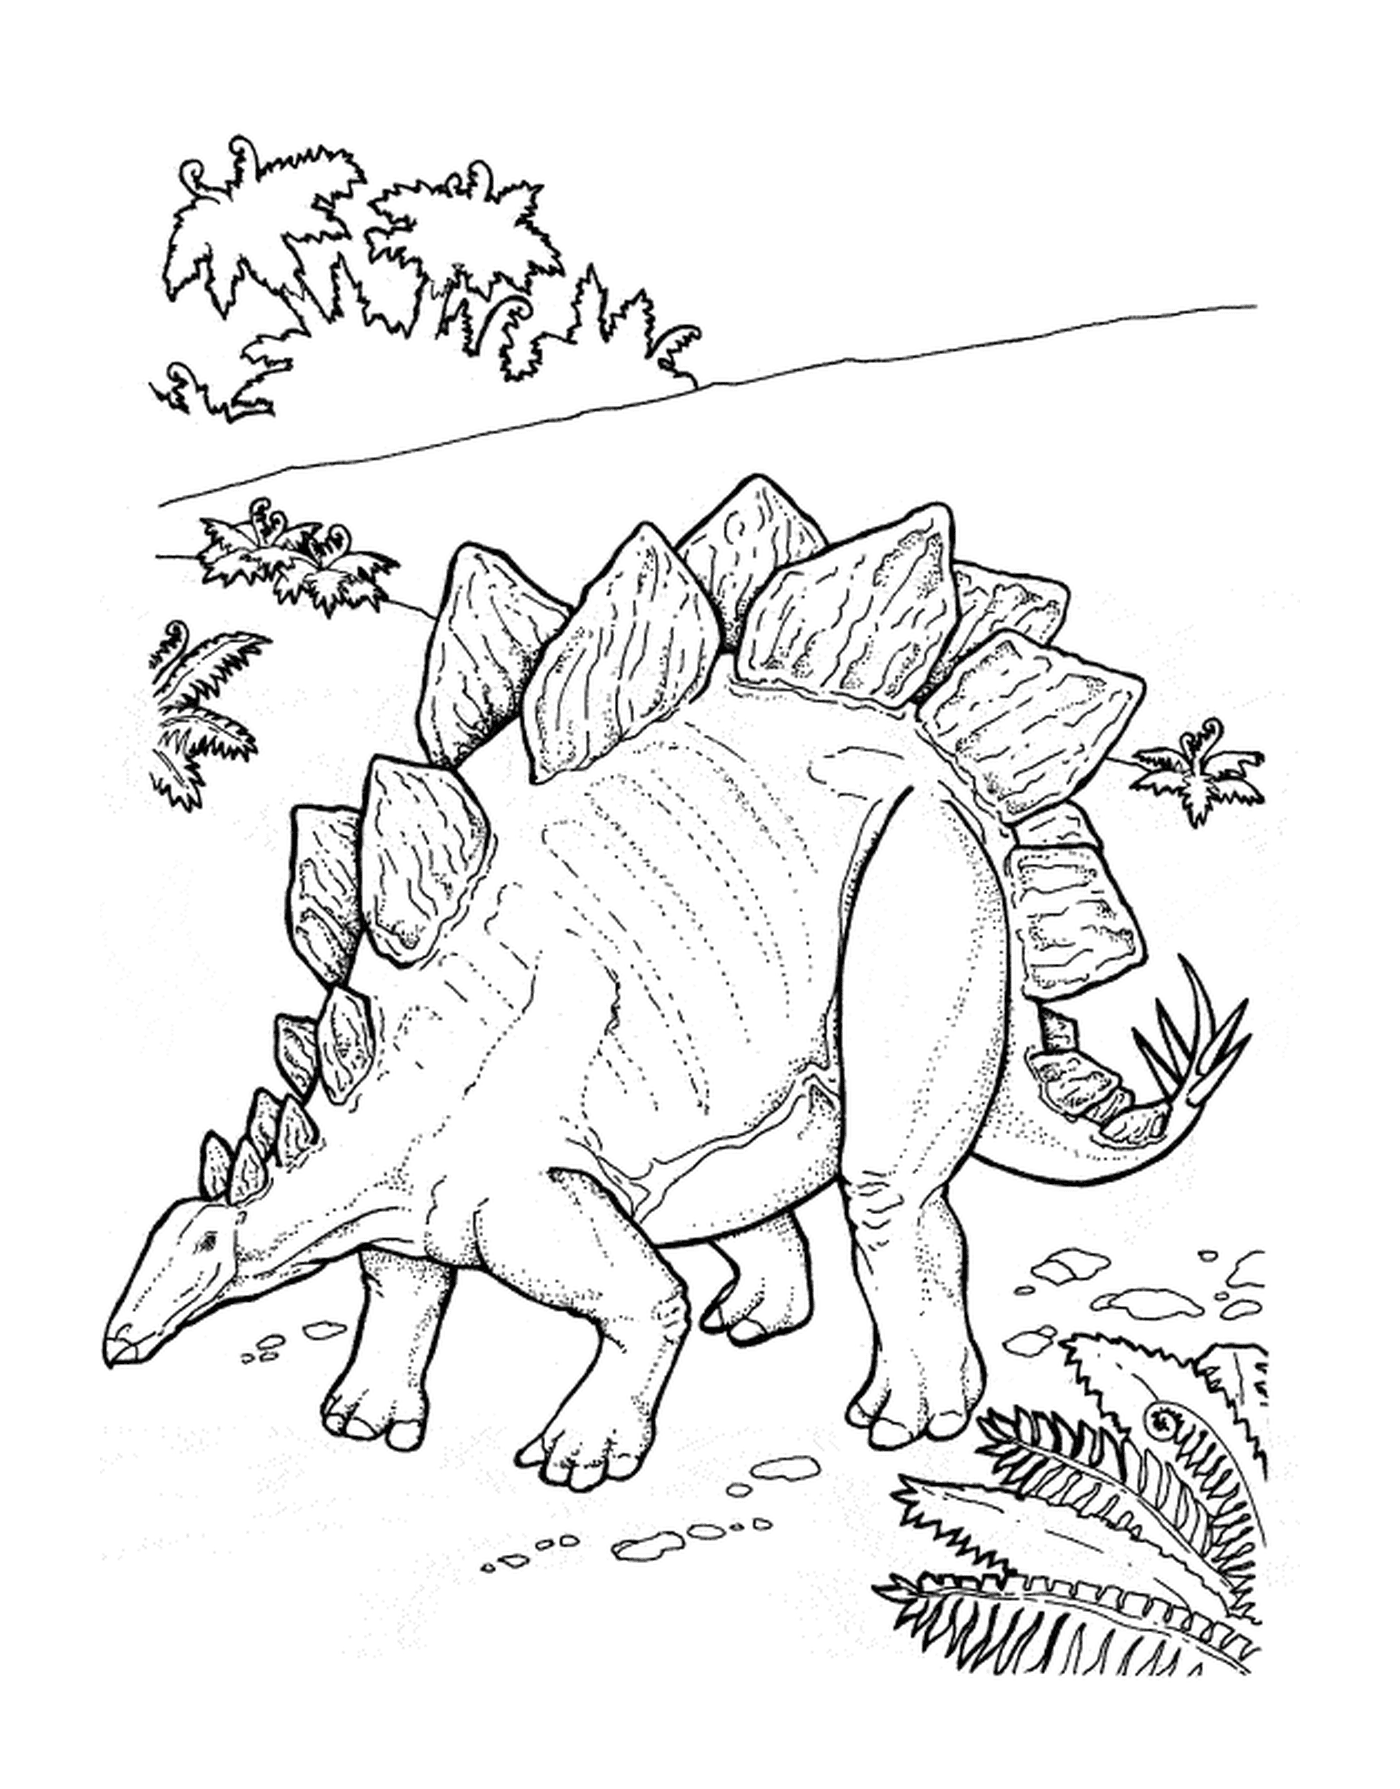  Estagossauro adulto em pé em um prado verde 